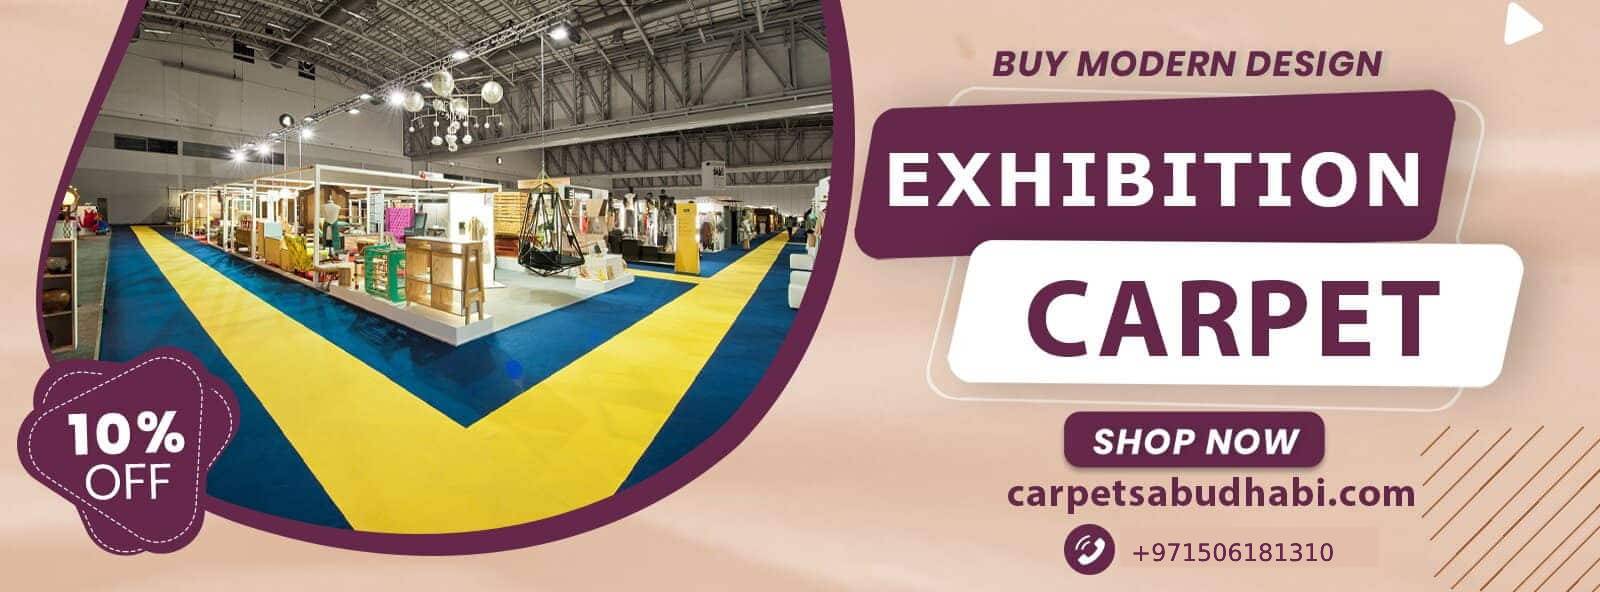 exhibition-carpets